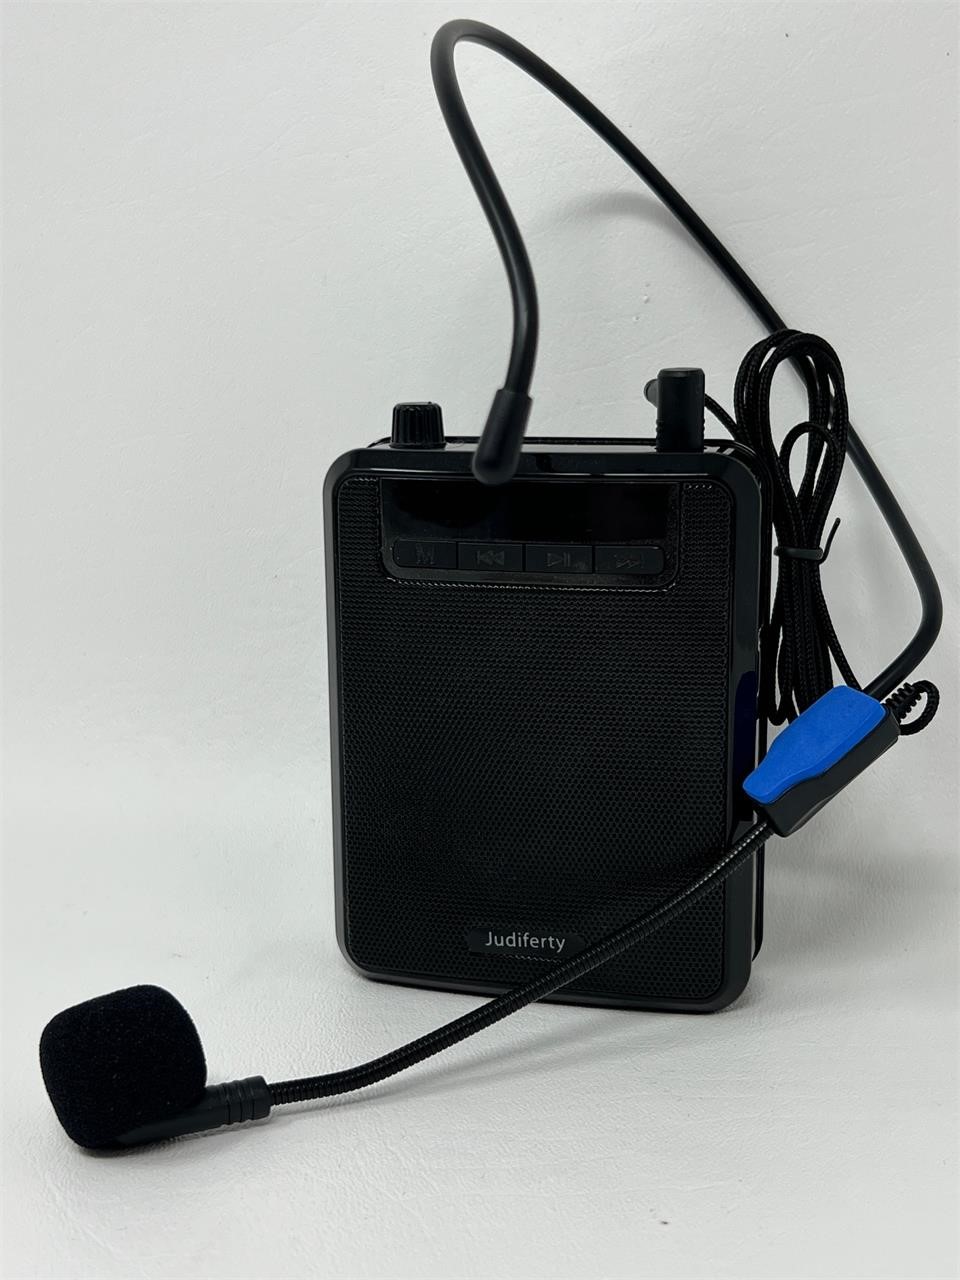 Judiferty Personal Wireless Microphone Amplifier